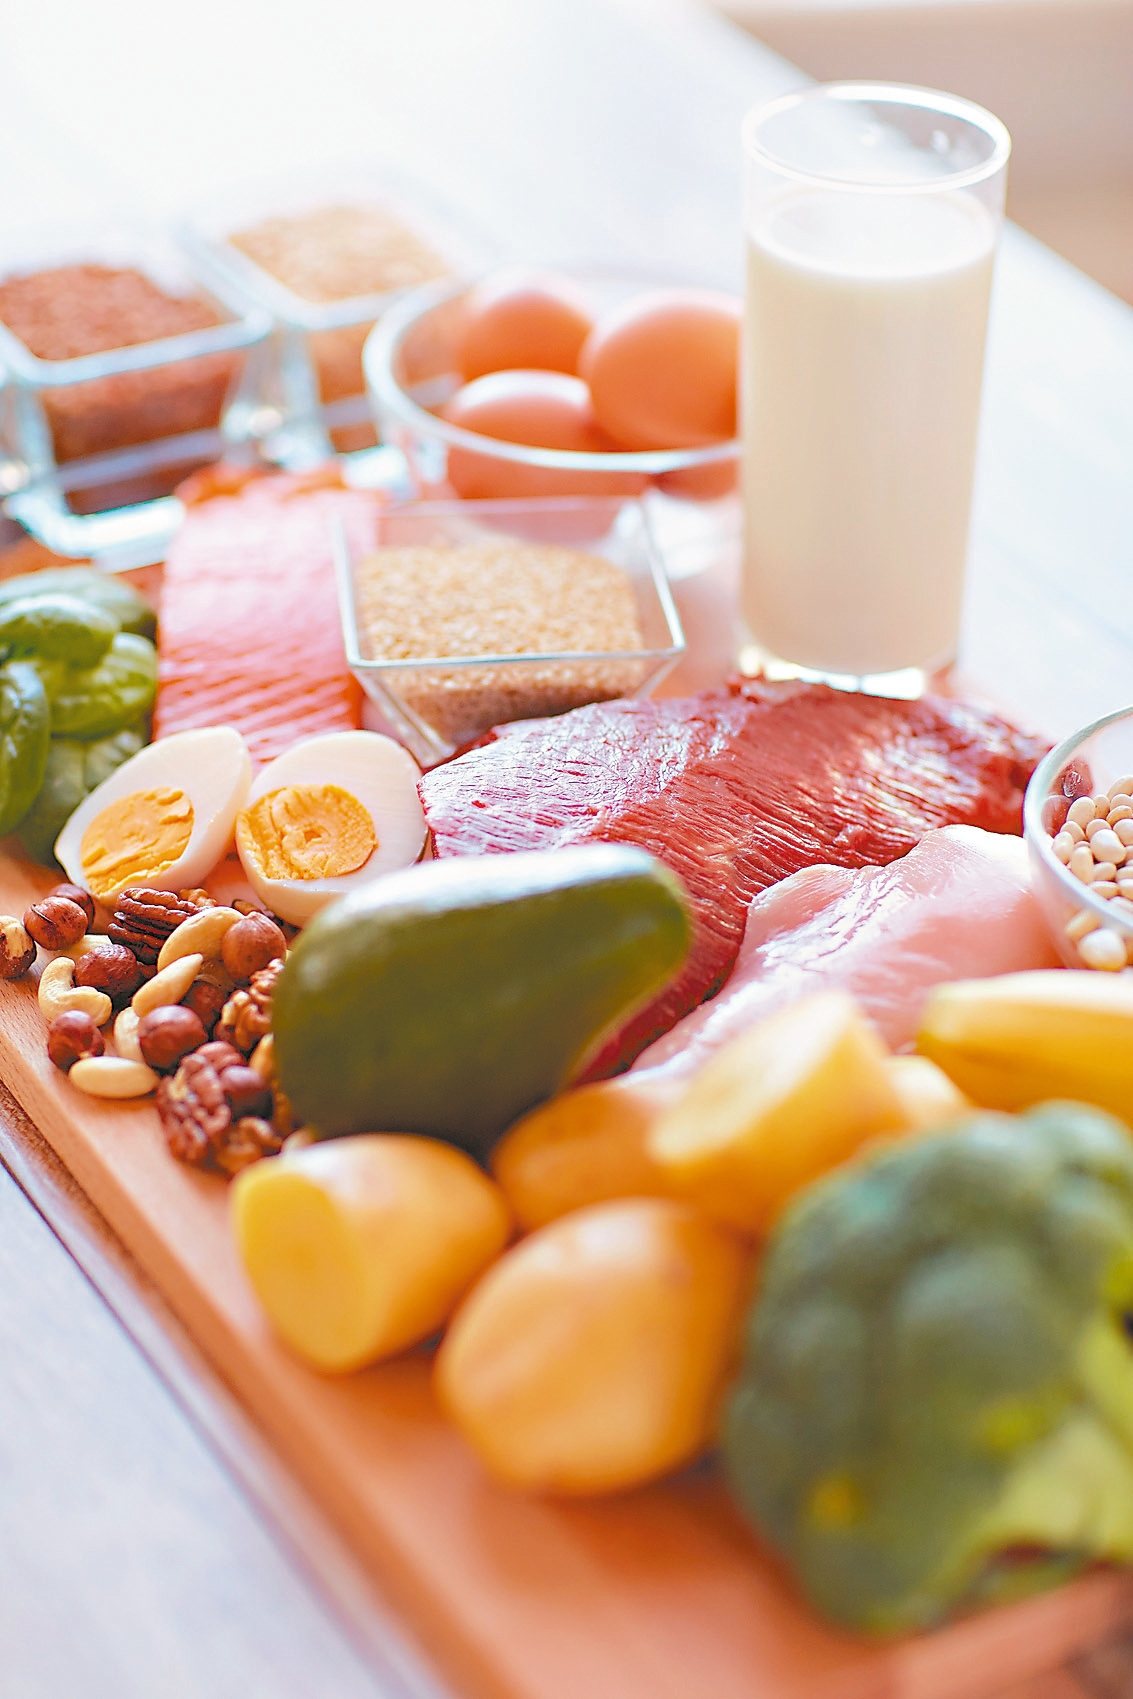 優質蛋白質的豆、魚、蛋、肉類及乳品類含量豐富，營養吃得夠，免疫力自動升級。